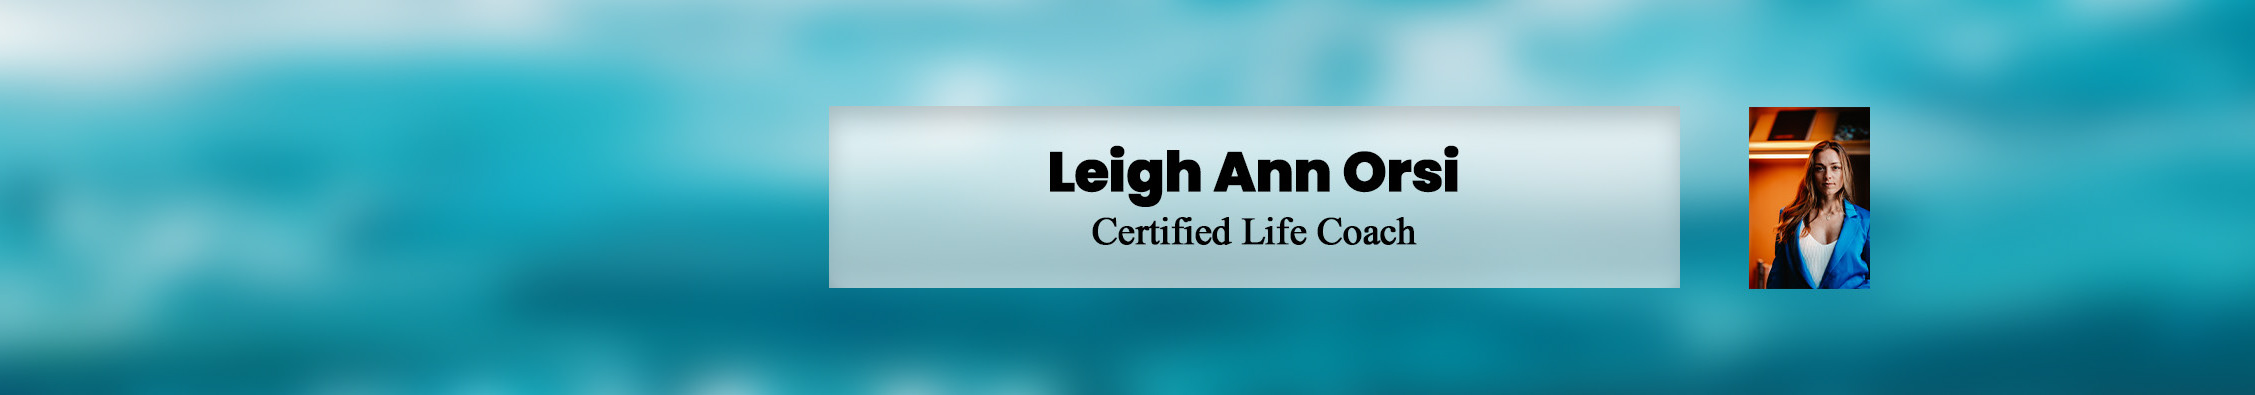 Leigh Ann Orsi's profile banner